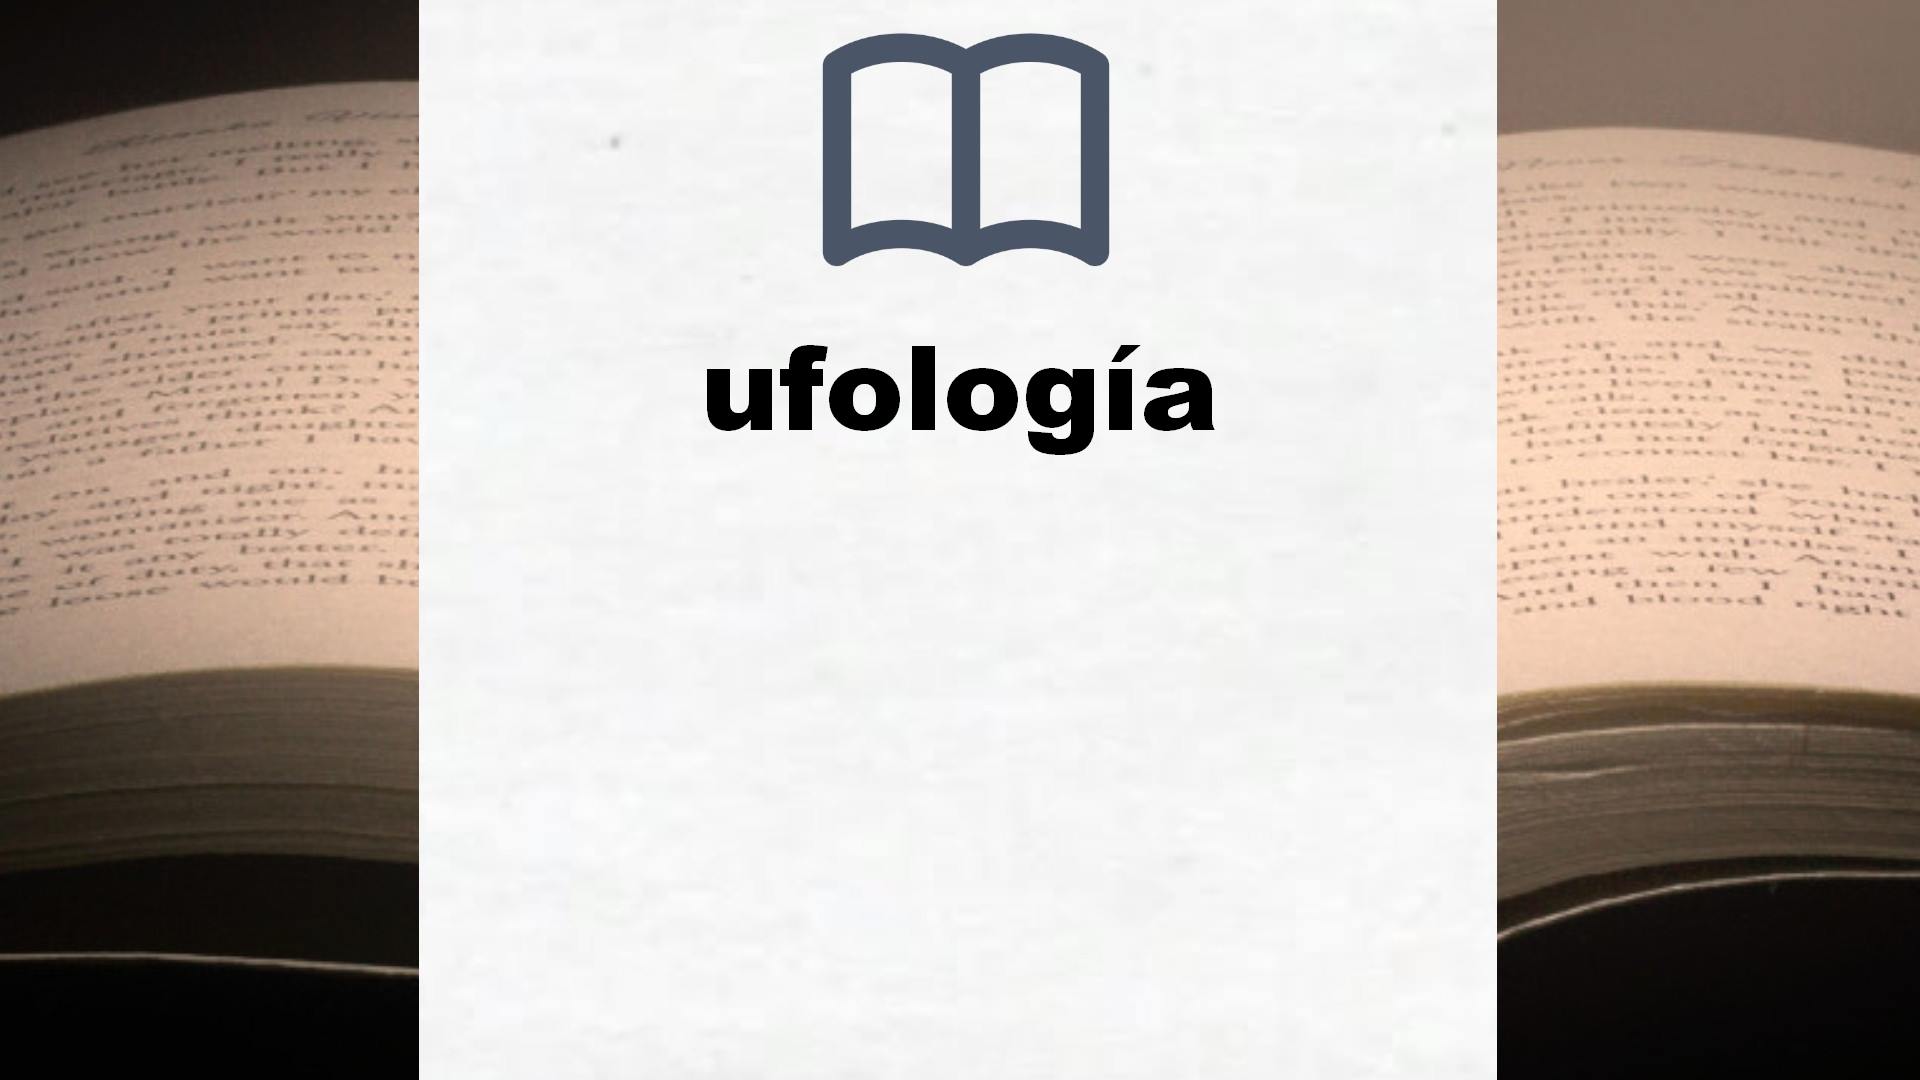 Libros sobre ufología